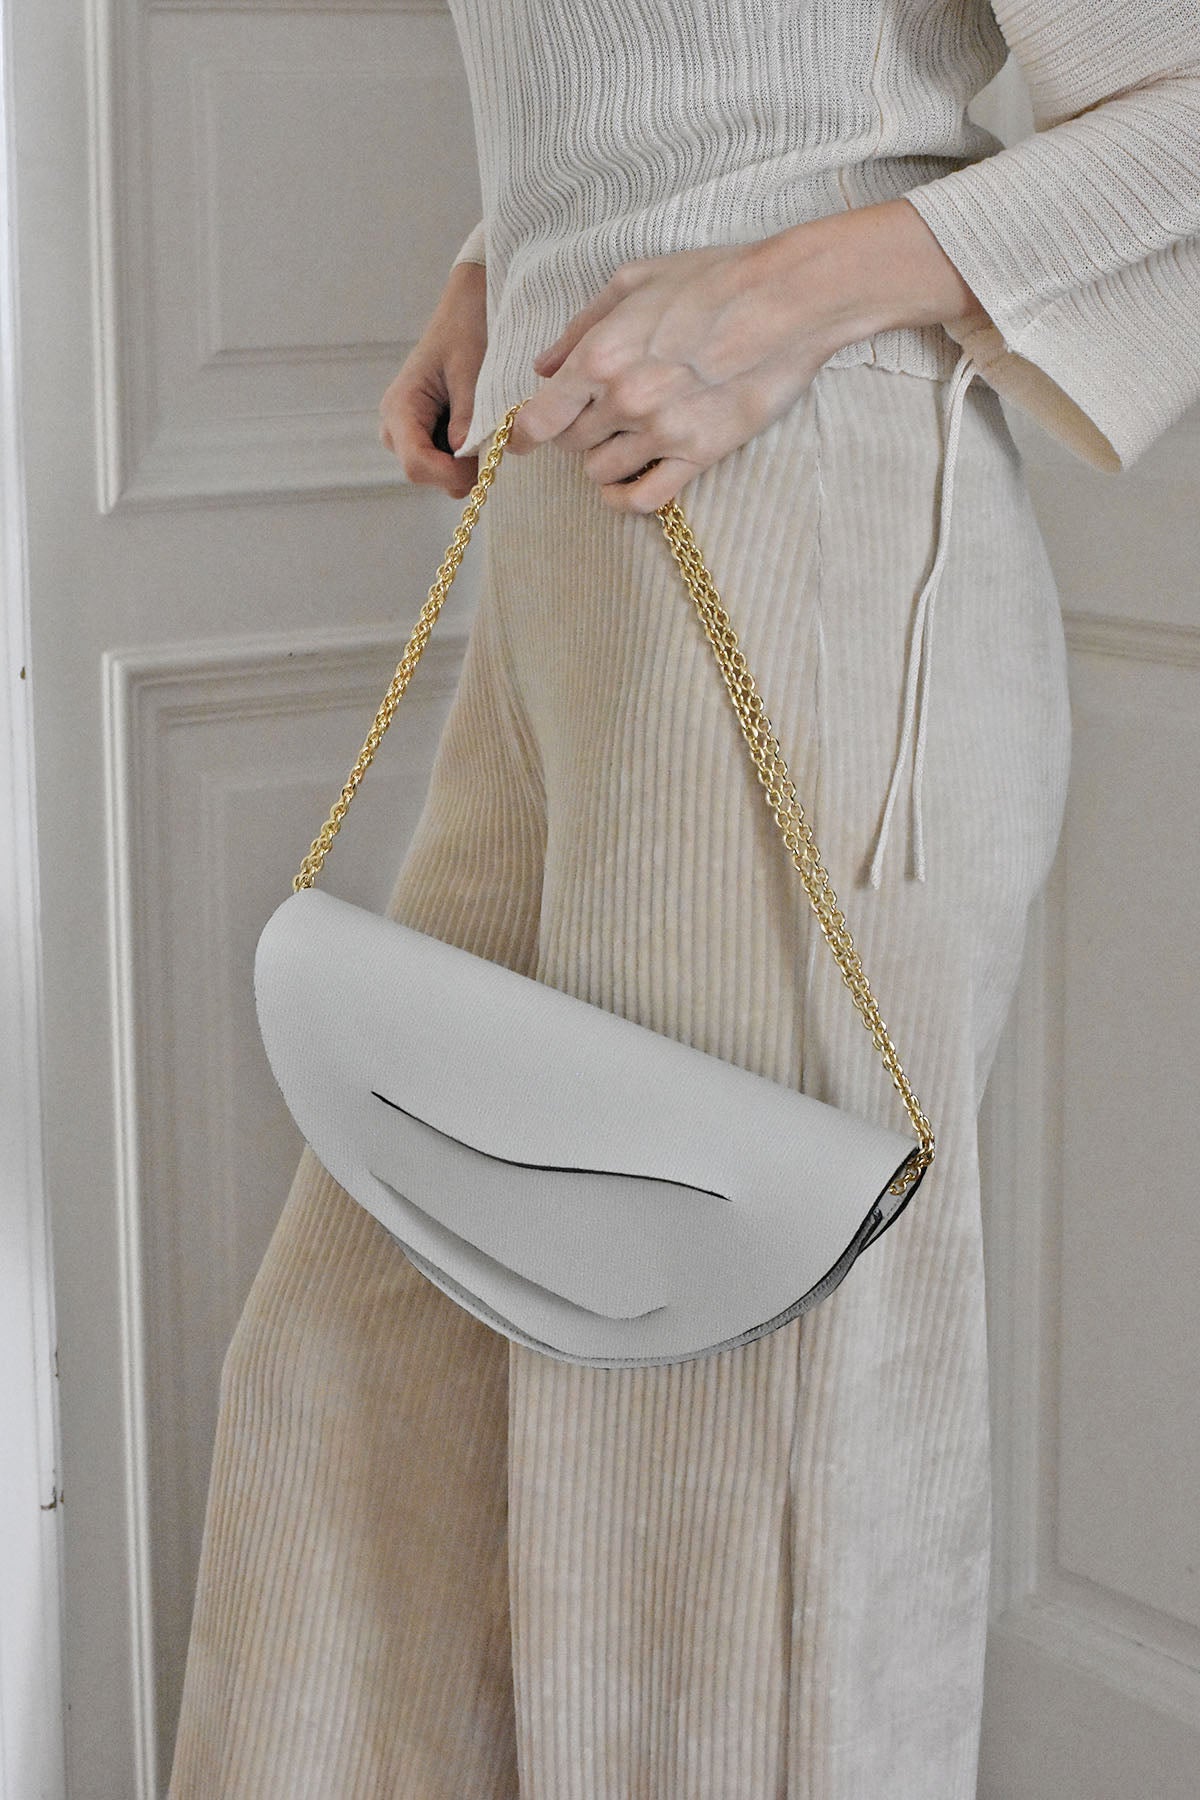 Dune Chain Bag - Off White - Mini / Standard